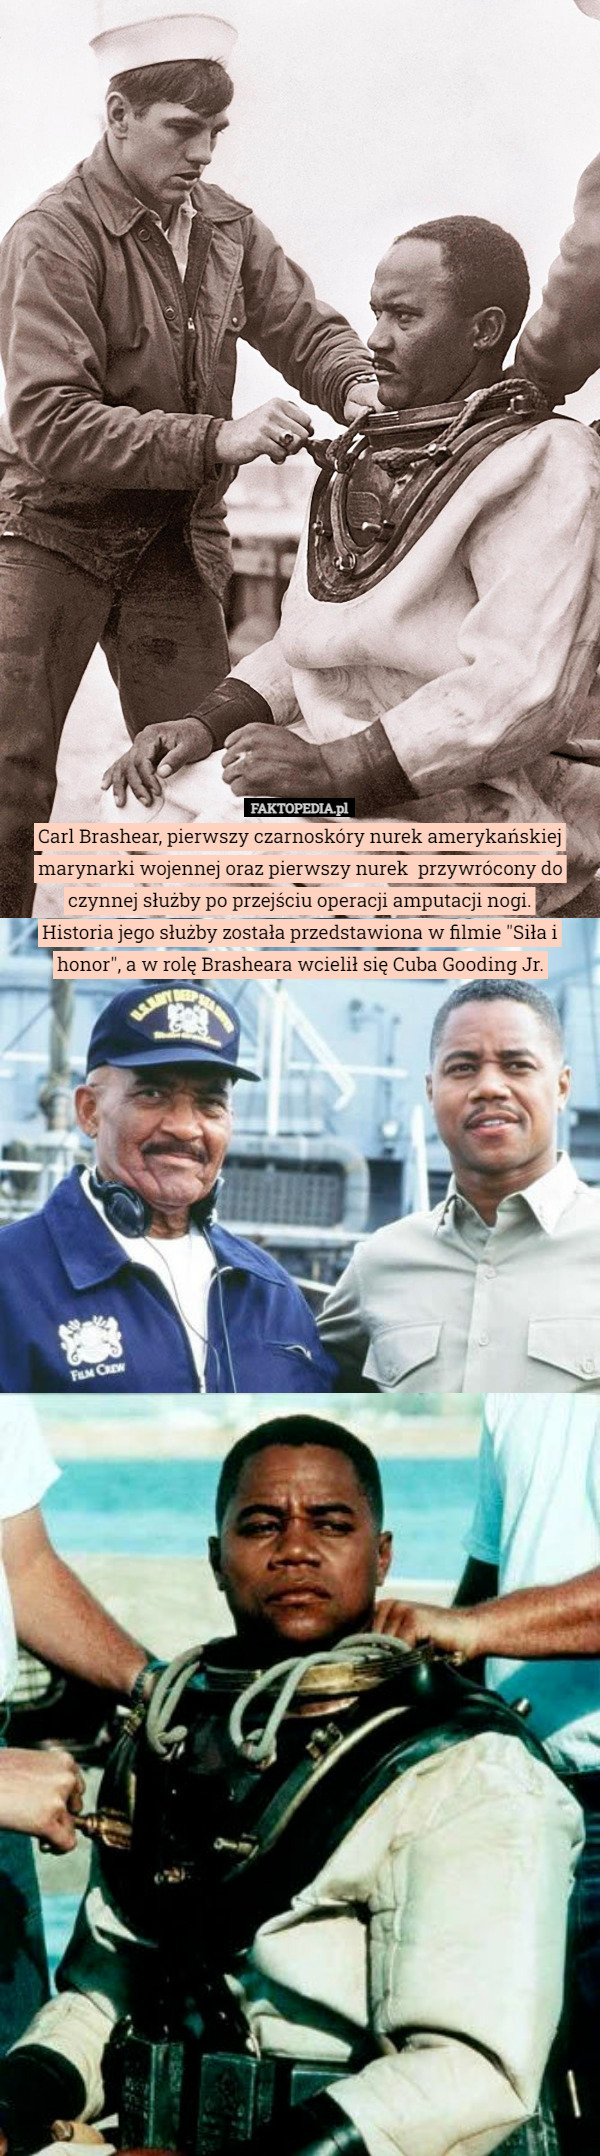 Carl Brashear, pierwszy czarnoskóry nurek amerykańskiej marynarki wojennej oraz pierwszy nurek  przywrócony do czynnej służby po przejściu operacji amputacji nogi.
Historia jego służby została przedstawiona w filmie "Siła i honor", a w rolę Brasheara wcielił się Cuba Gooding Jr. 